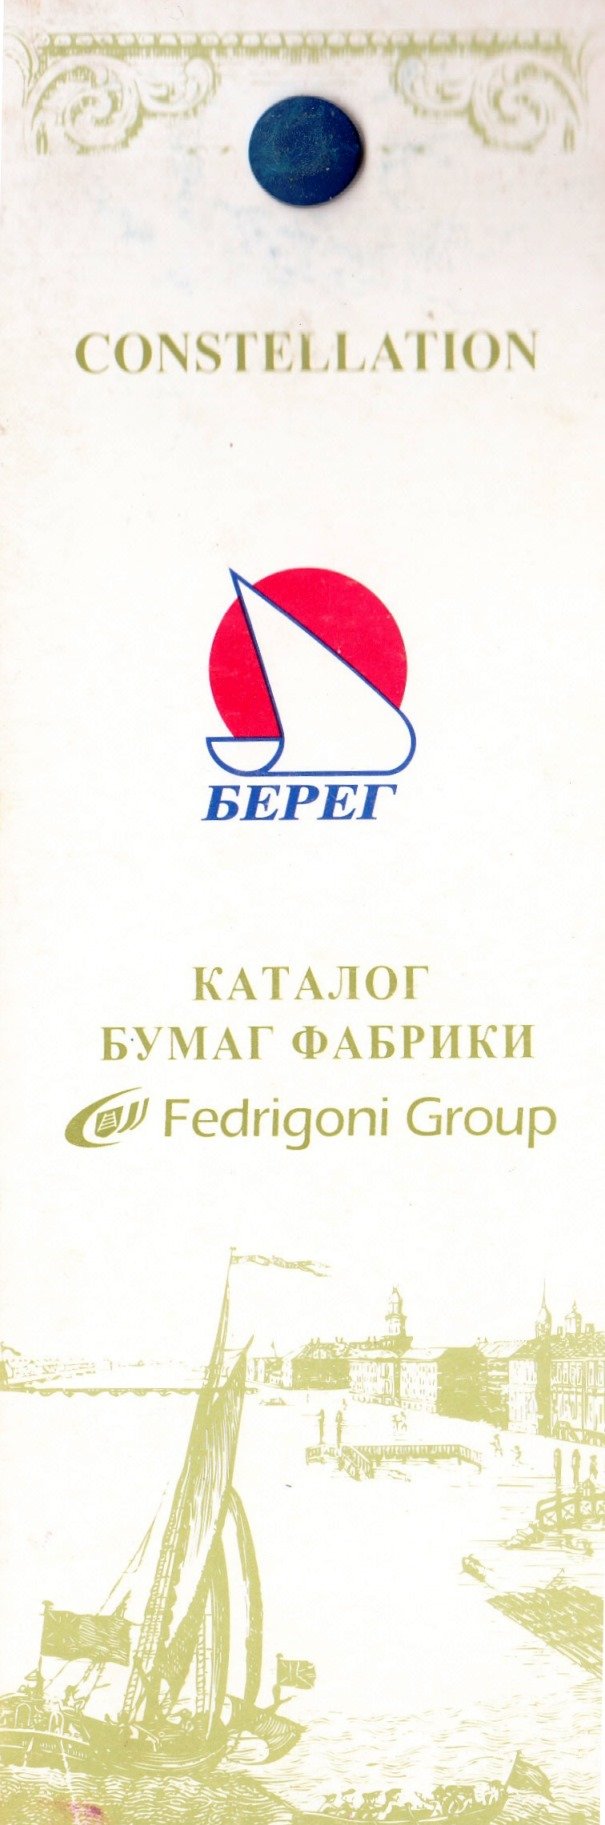 Каталог паперу фабрики Fedrigoni Group Comstellation, 2002 (Державний політехнічний музей імені Бориса Патона CC BY-NC-SA)